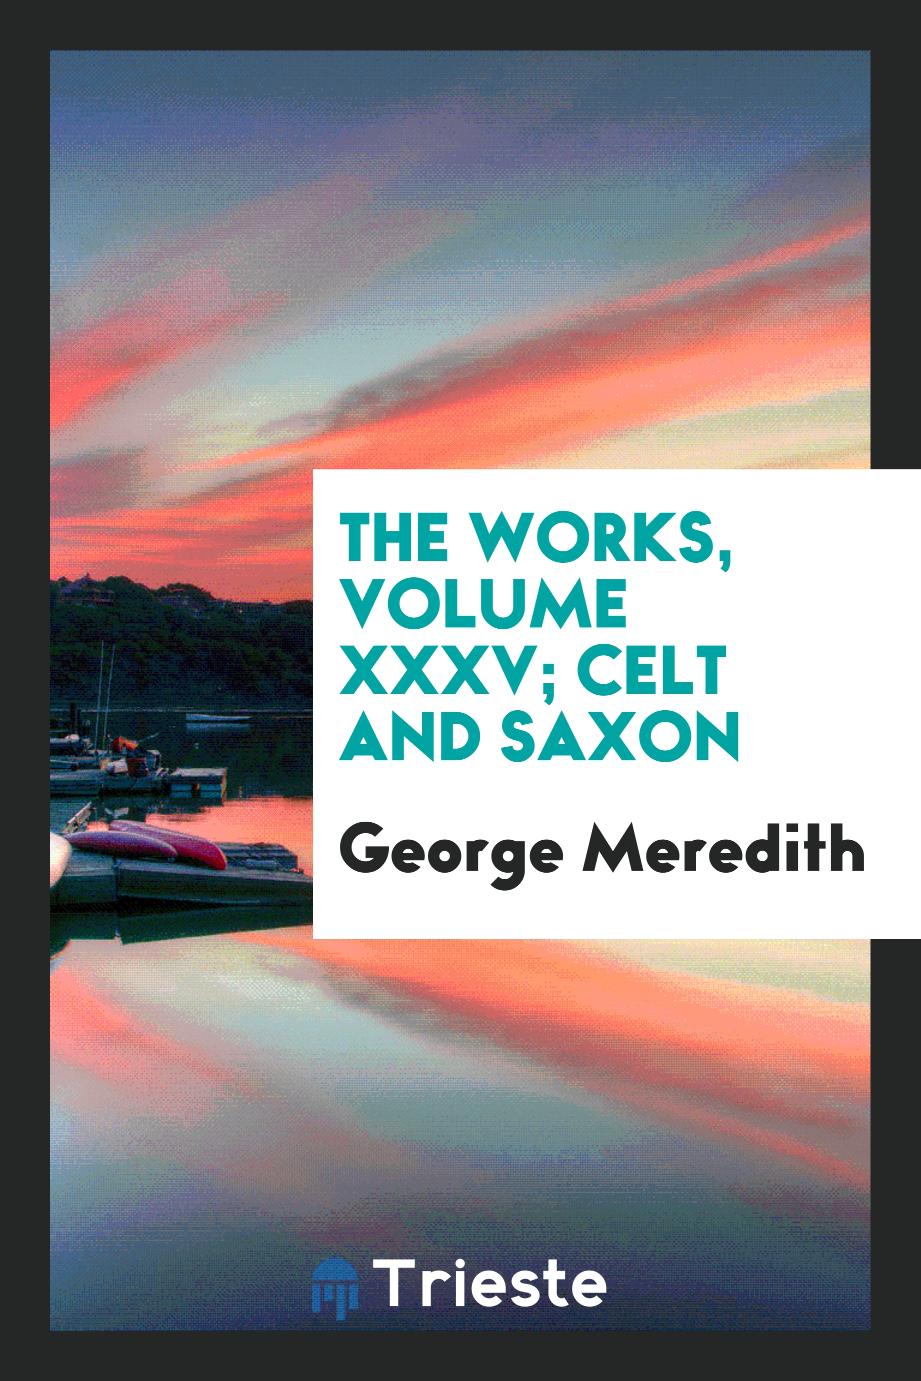 The Works, Volume XXXV; Celt and Saxon